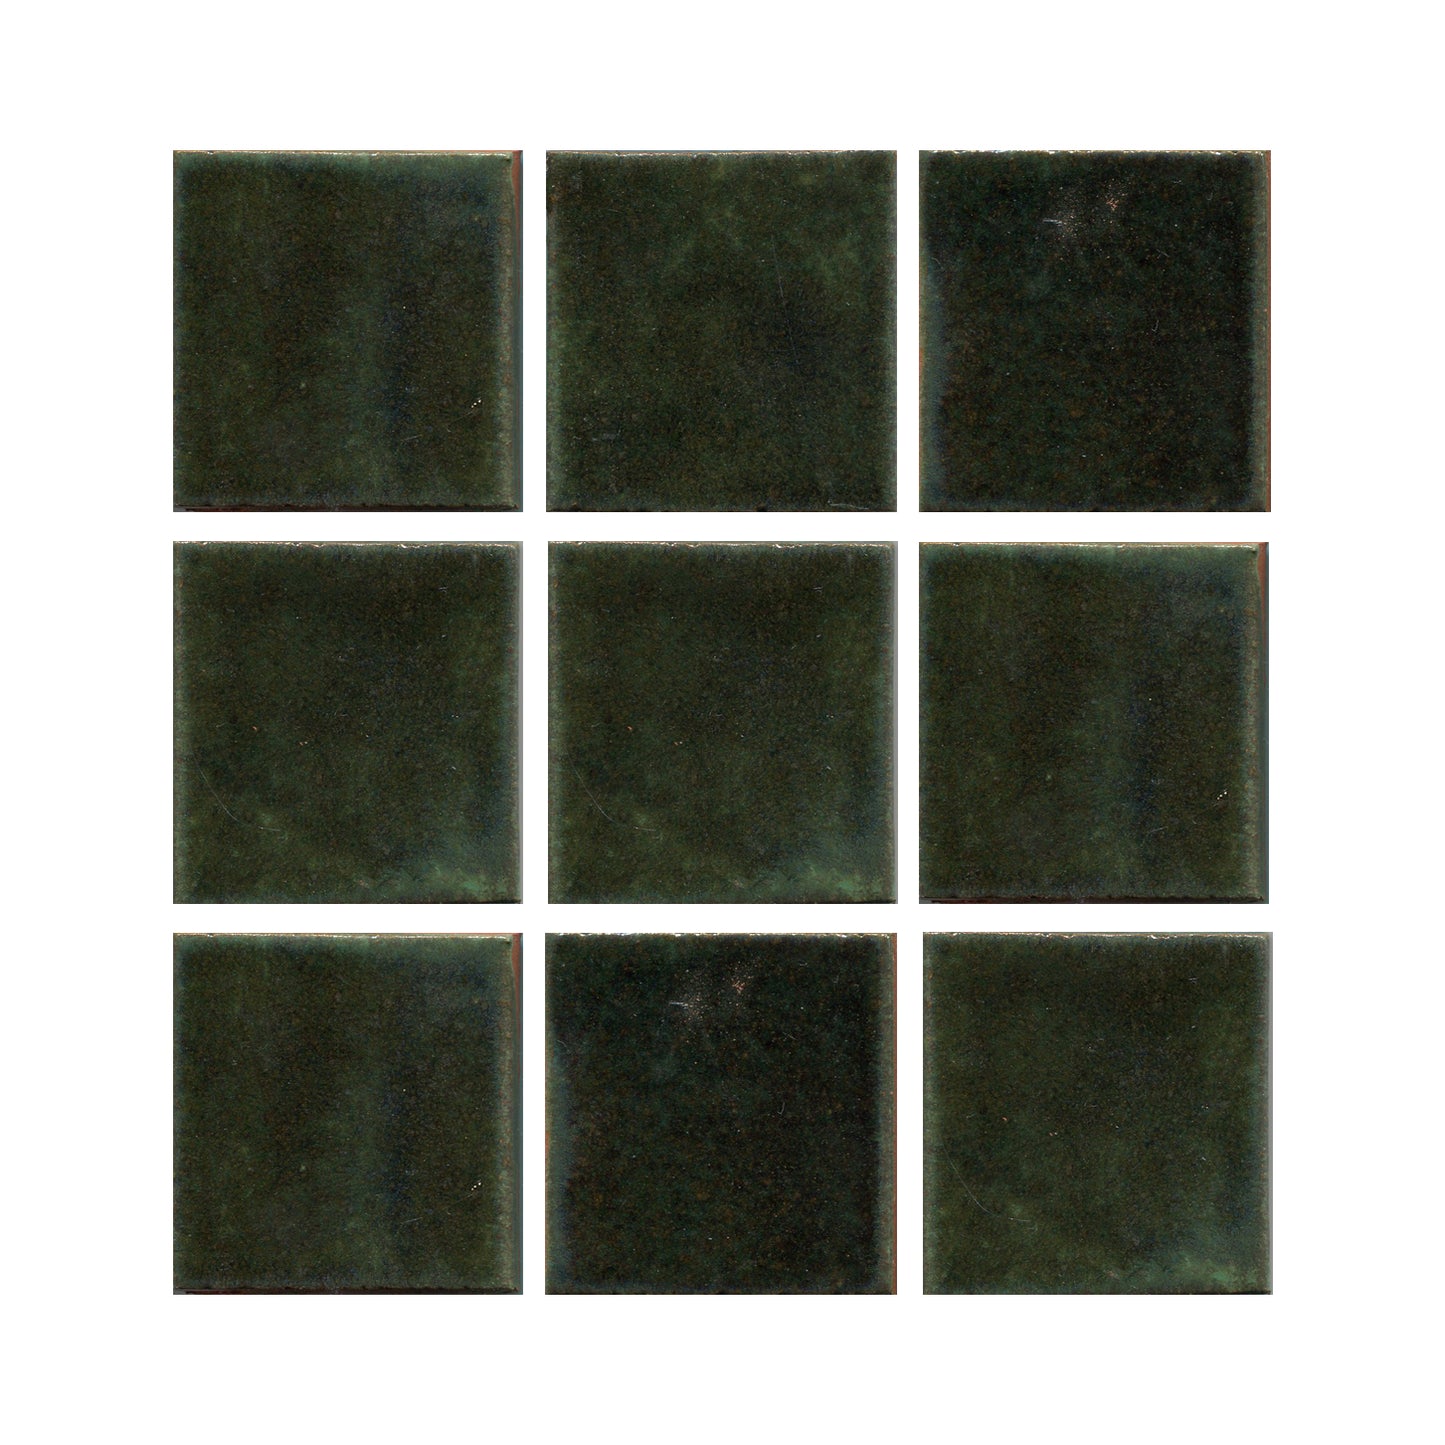 Jade Moss green 3x3 field tile